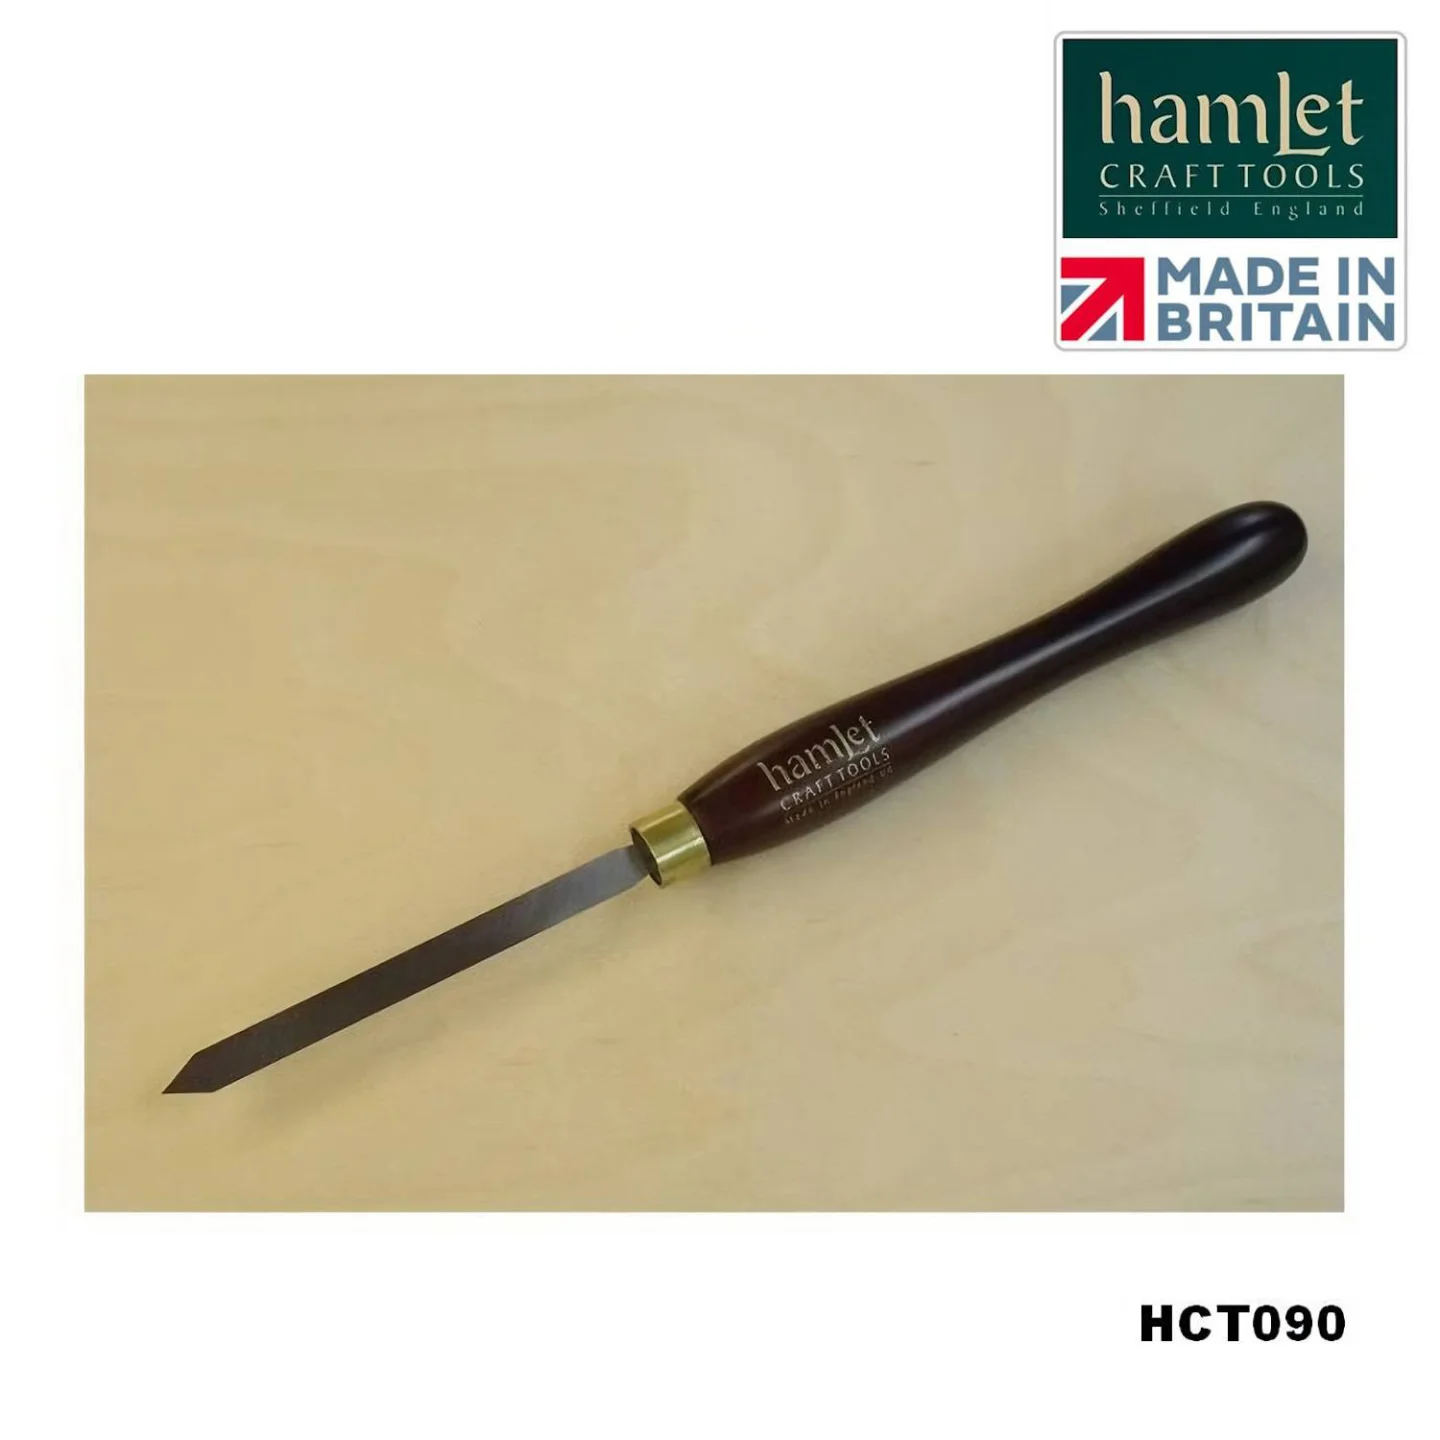 afsteekbeitel-Hamlet-HCT090.